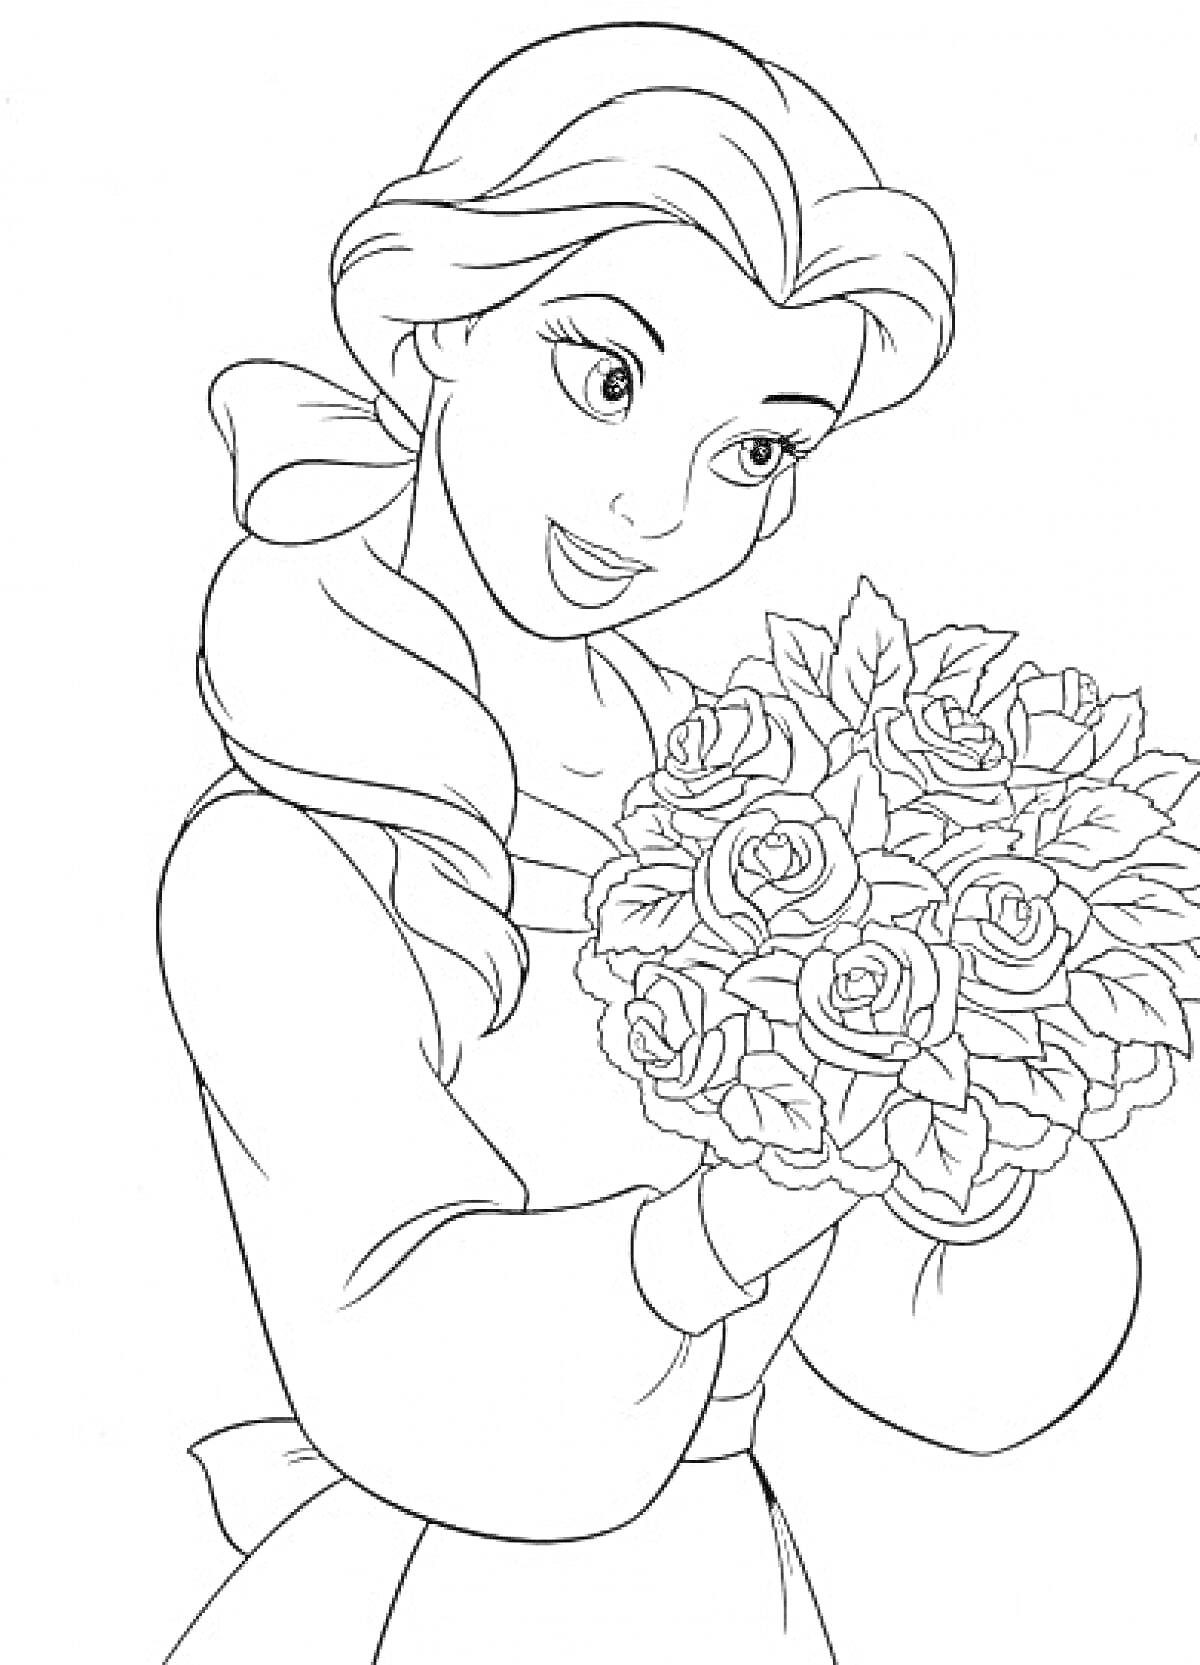 Принцесса Бель с букетом роз